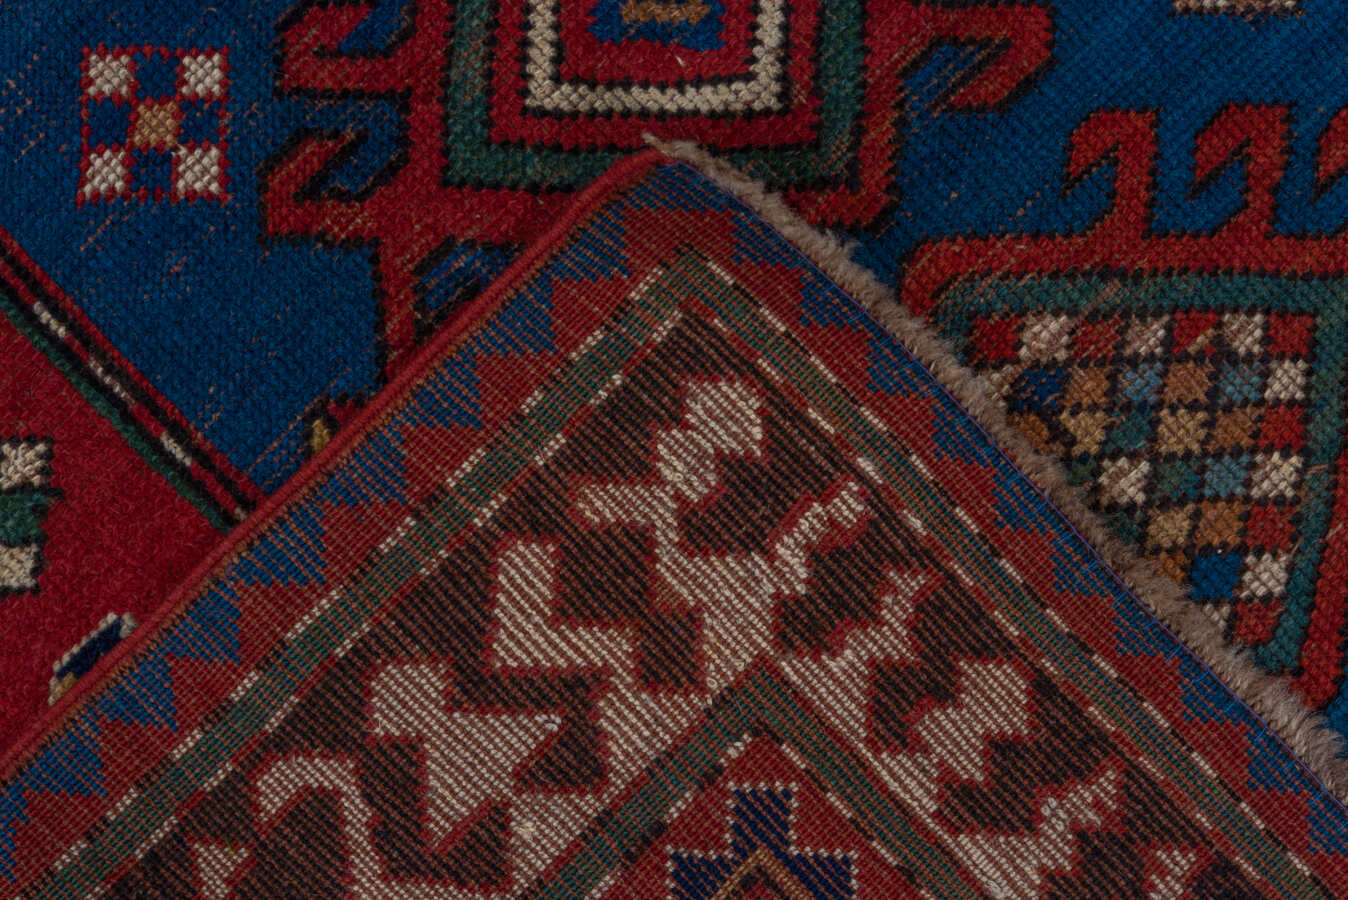 Antique kazak, bordjaloo Rug - # 56857